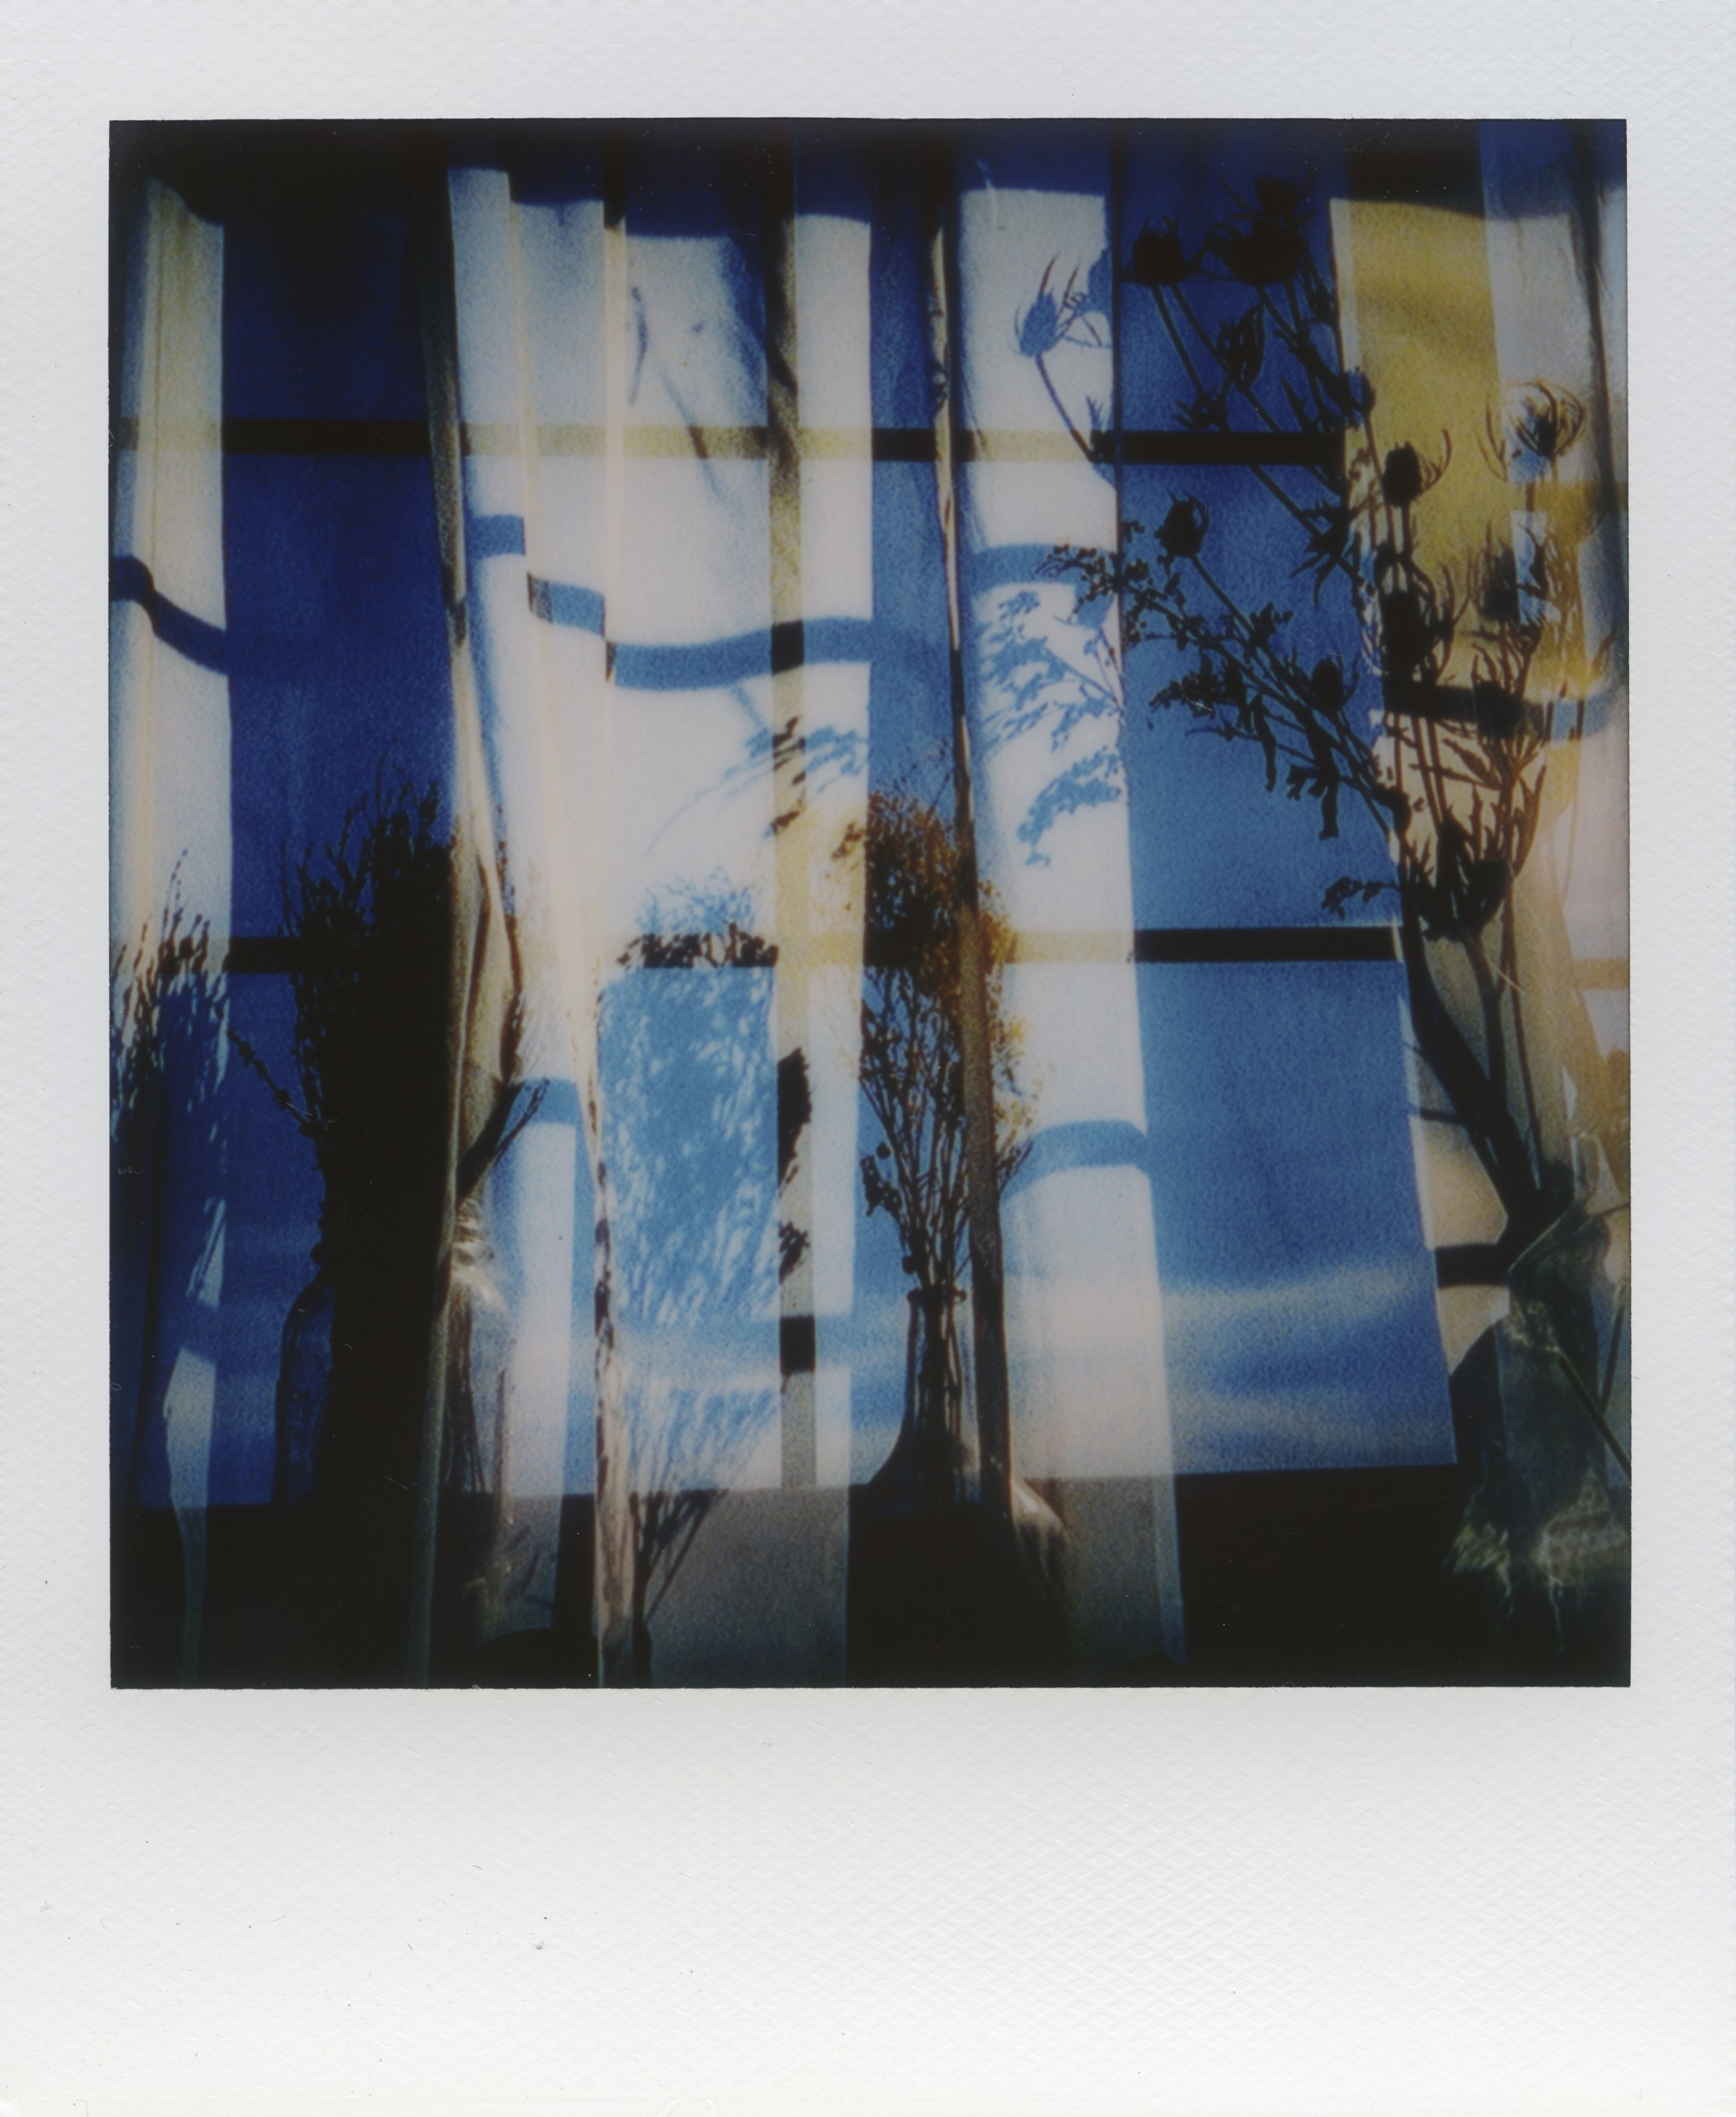  Polaroids taken by Devin Blaskovich 